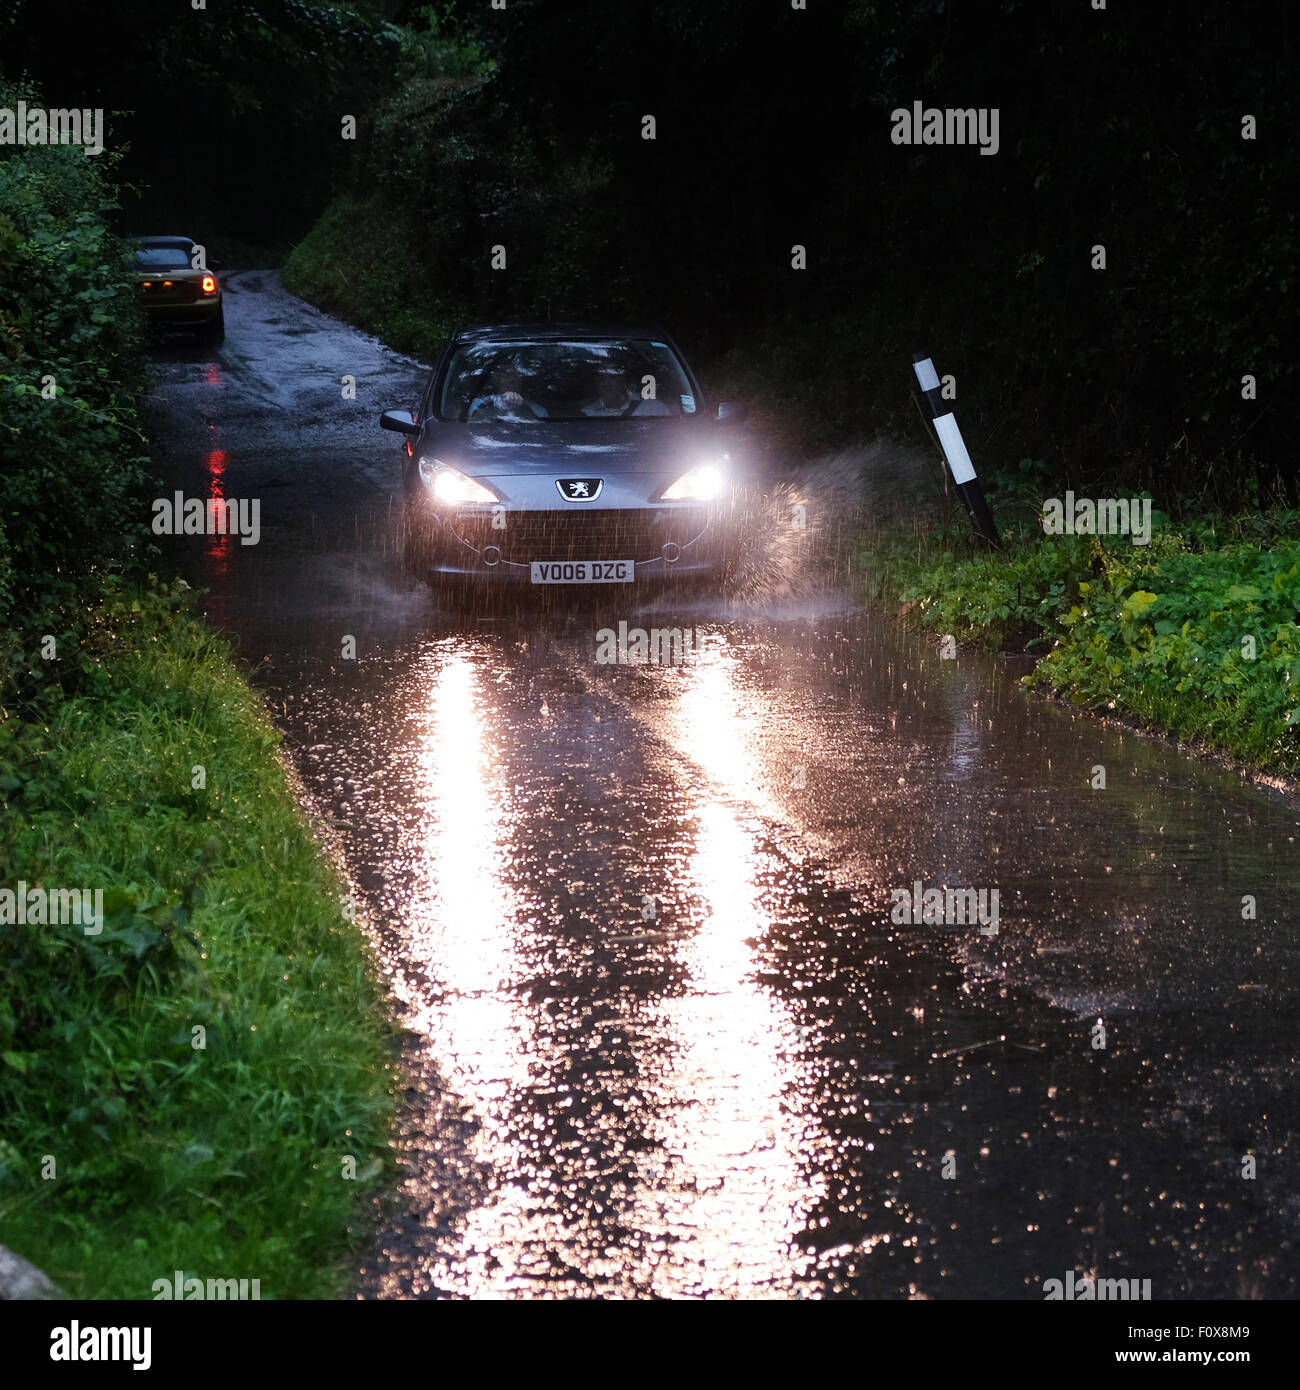 Titley, Herefordshire, England. 22. August 2015. Nach einem sehr heißen und feuchten Wetter brachte ein Sommergewitter sehr dunklen Himmel und sintflutartigen Regen nach unten am Titley Herefordshire am 18:15 verursacht Überschwemmungen auf viele Feldwege, die Kanalisation fehlt. Stockfoto